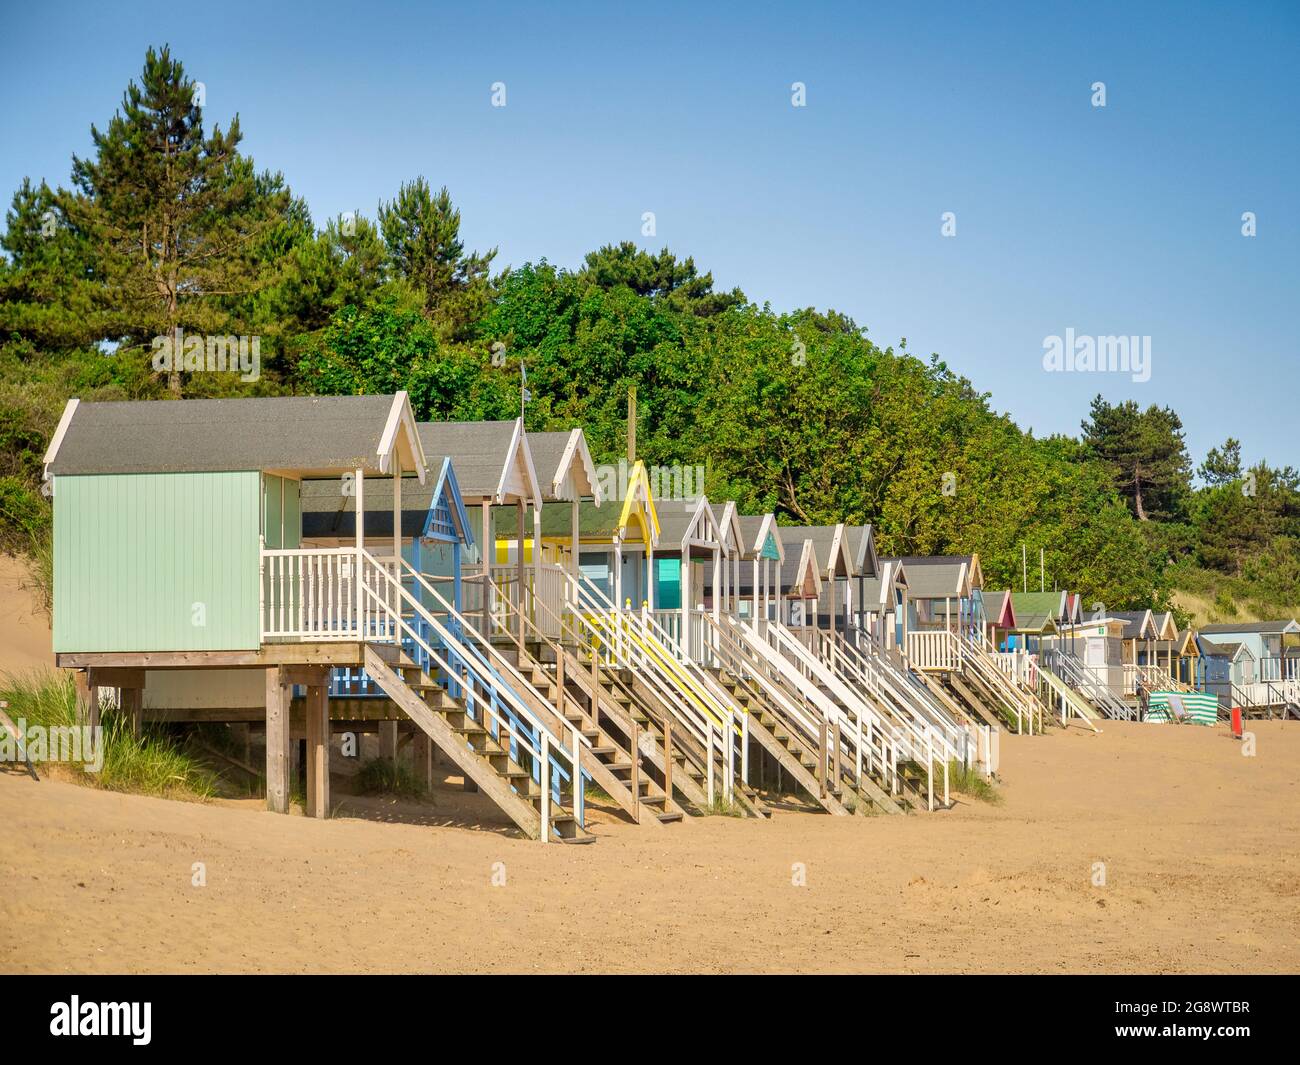 29 juin 2019: Wells-Next-the-Sea, Norfolk, Angleterre, Royaume-Uni - cabines de baignade sur la plage, arbres derrière. Banque D'Images